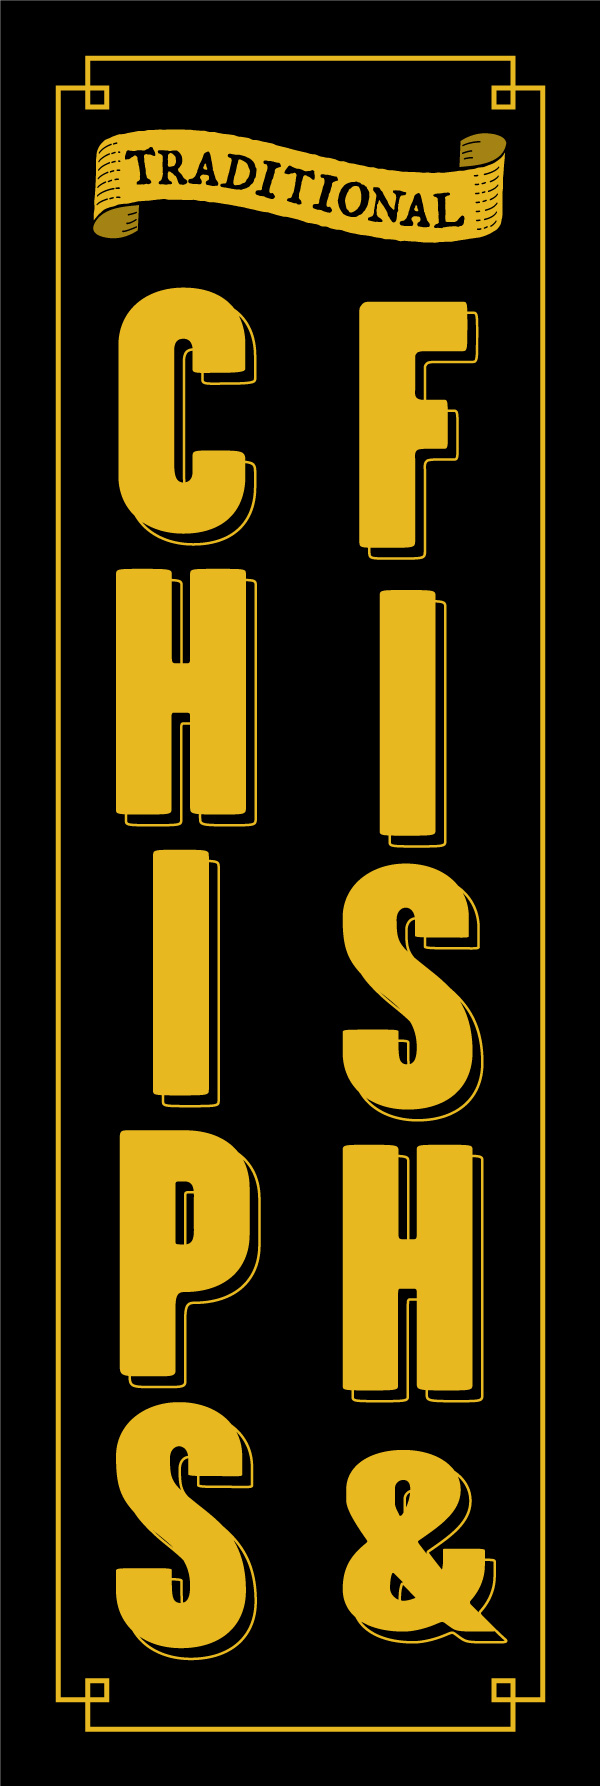 フィッシュ&チップス 149_01 「フィッシュ&チップス」の幟です。ブリティッシュパブをイメージしたデザインで英語表記の「FISH & CHIPS」にしました。（Y.M）